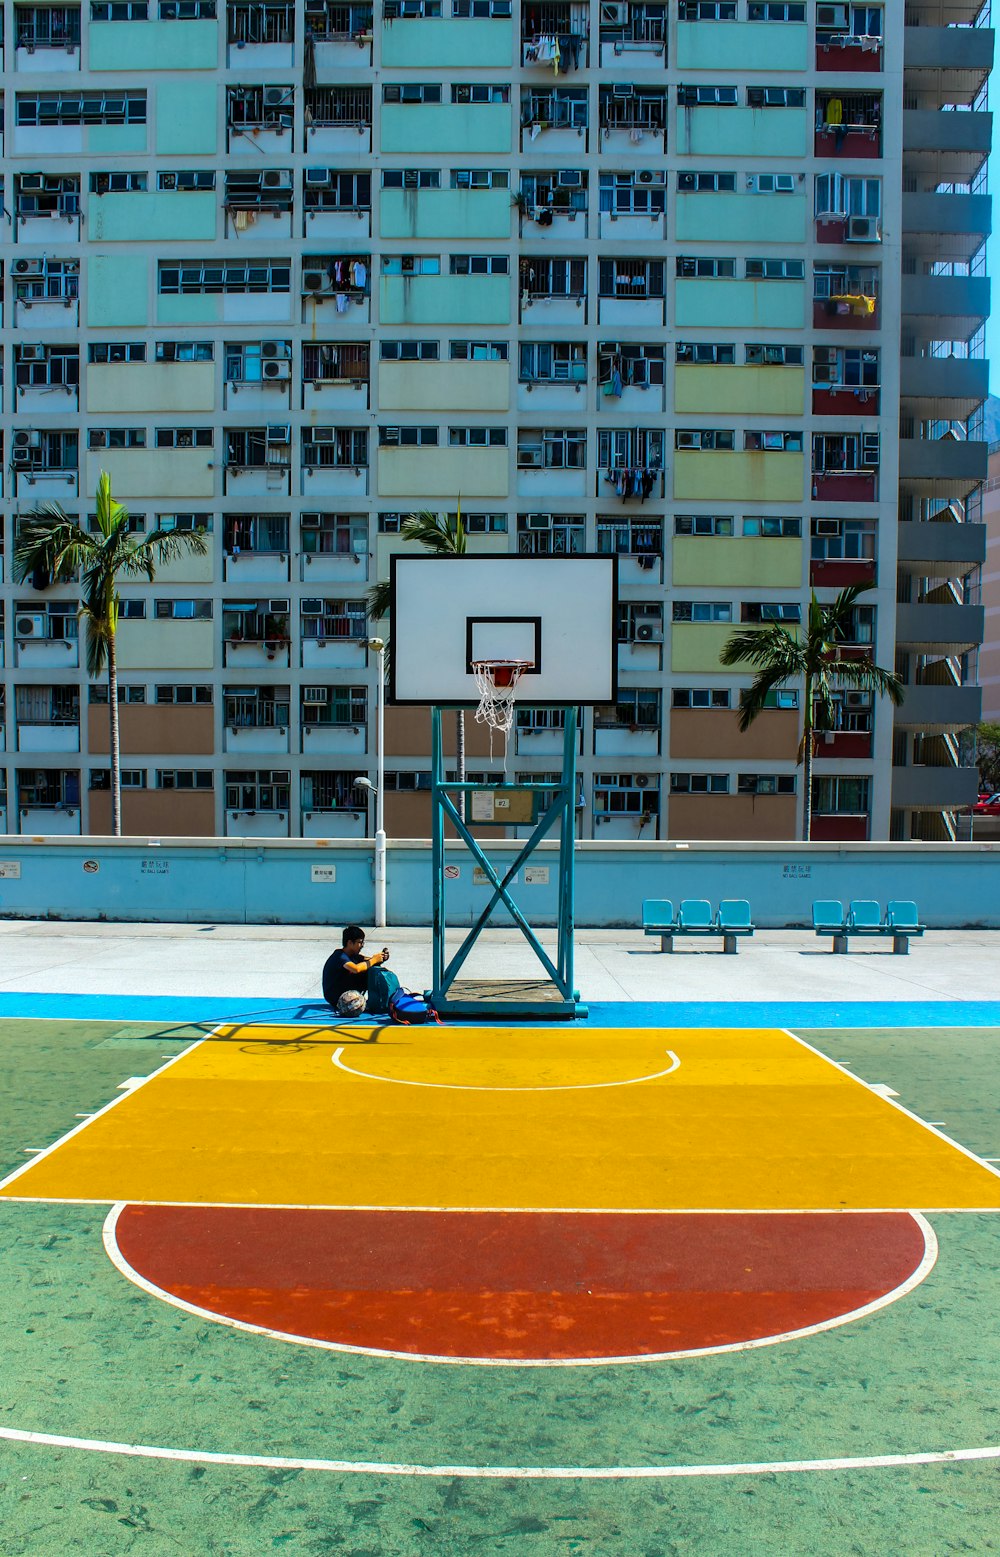 Hombre sentado debajo del aro de baloncesto cerca del edificio durante el día